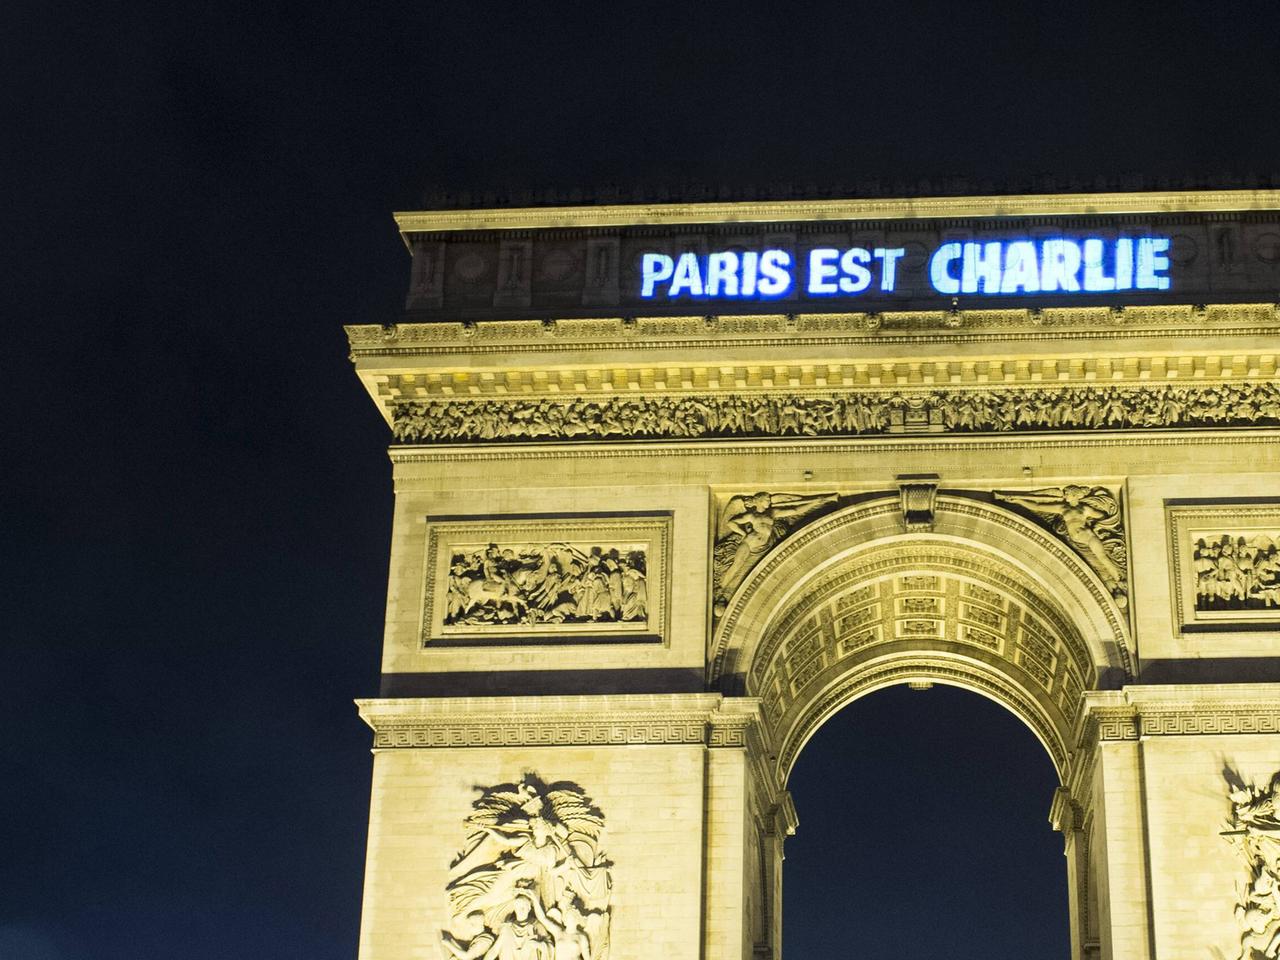 Der Triumphbogen in Paris mit dem Schriftzug "Paris ist Charlie"